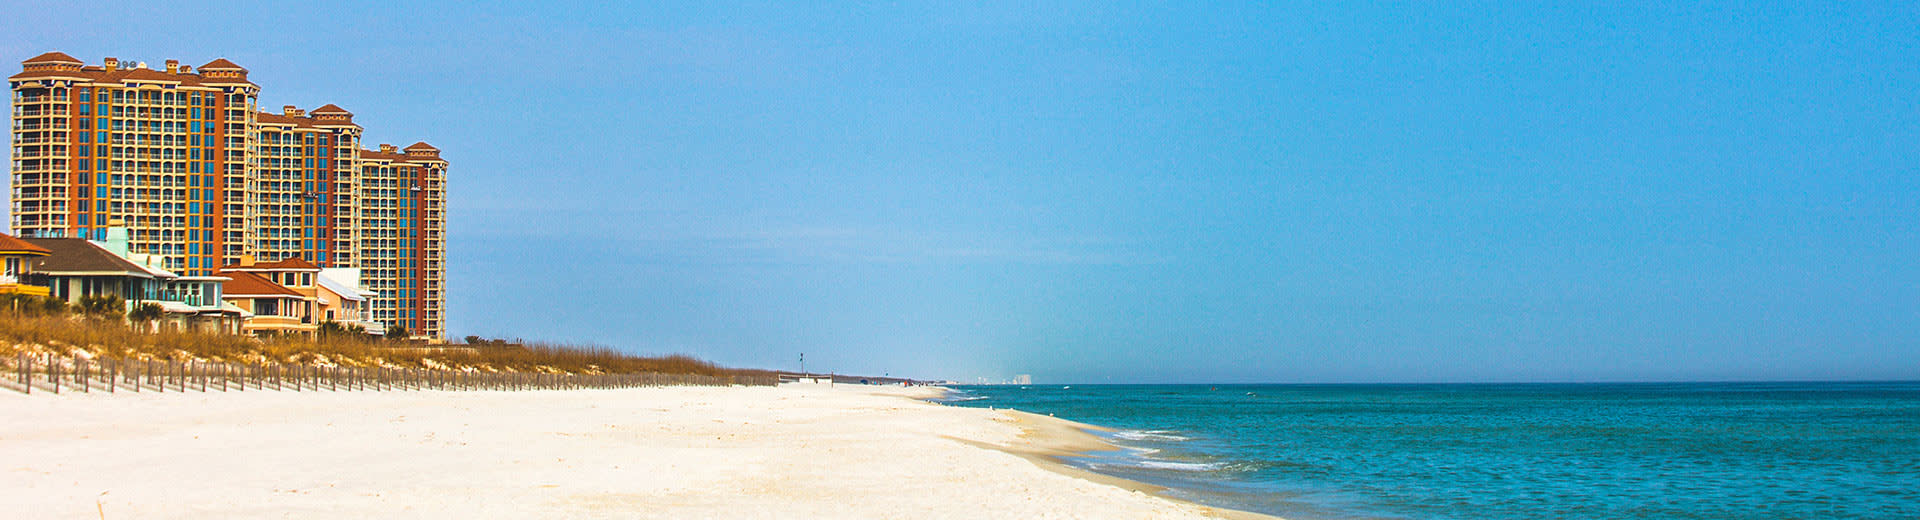 Ein Hotel am Wasser am Strand von Pensacola blickt auf weißes Sand und blaues Wasser.